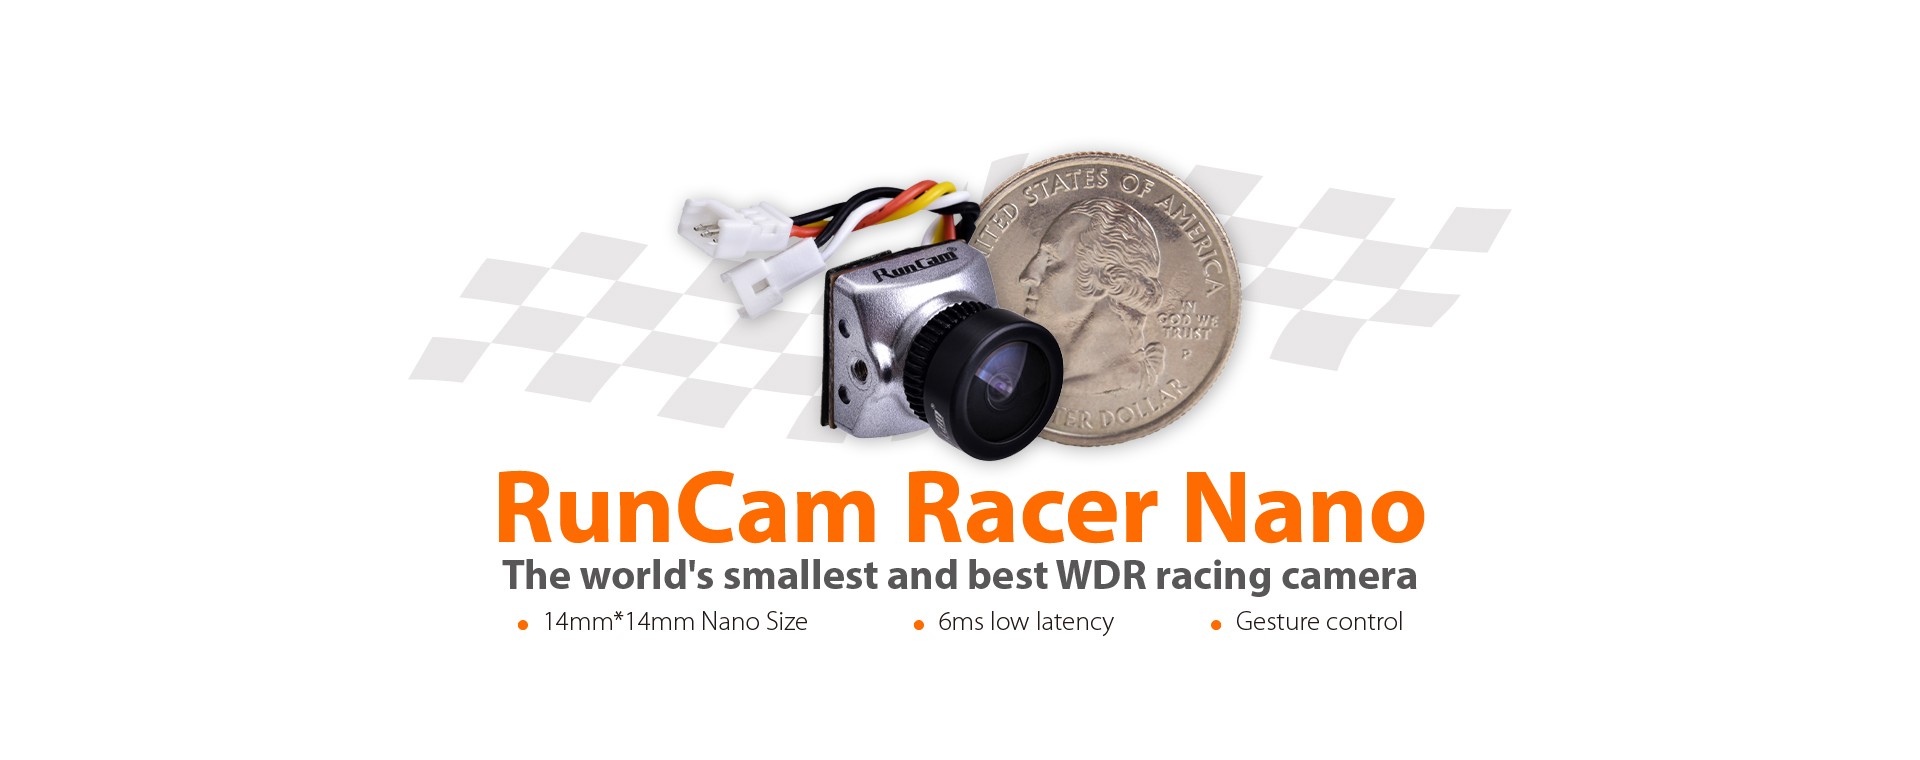 RunCam Racer Nano